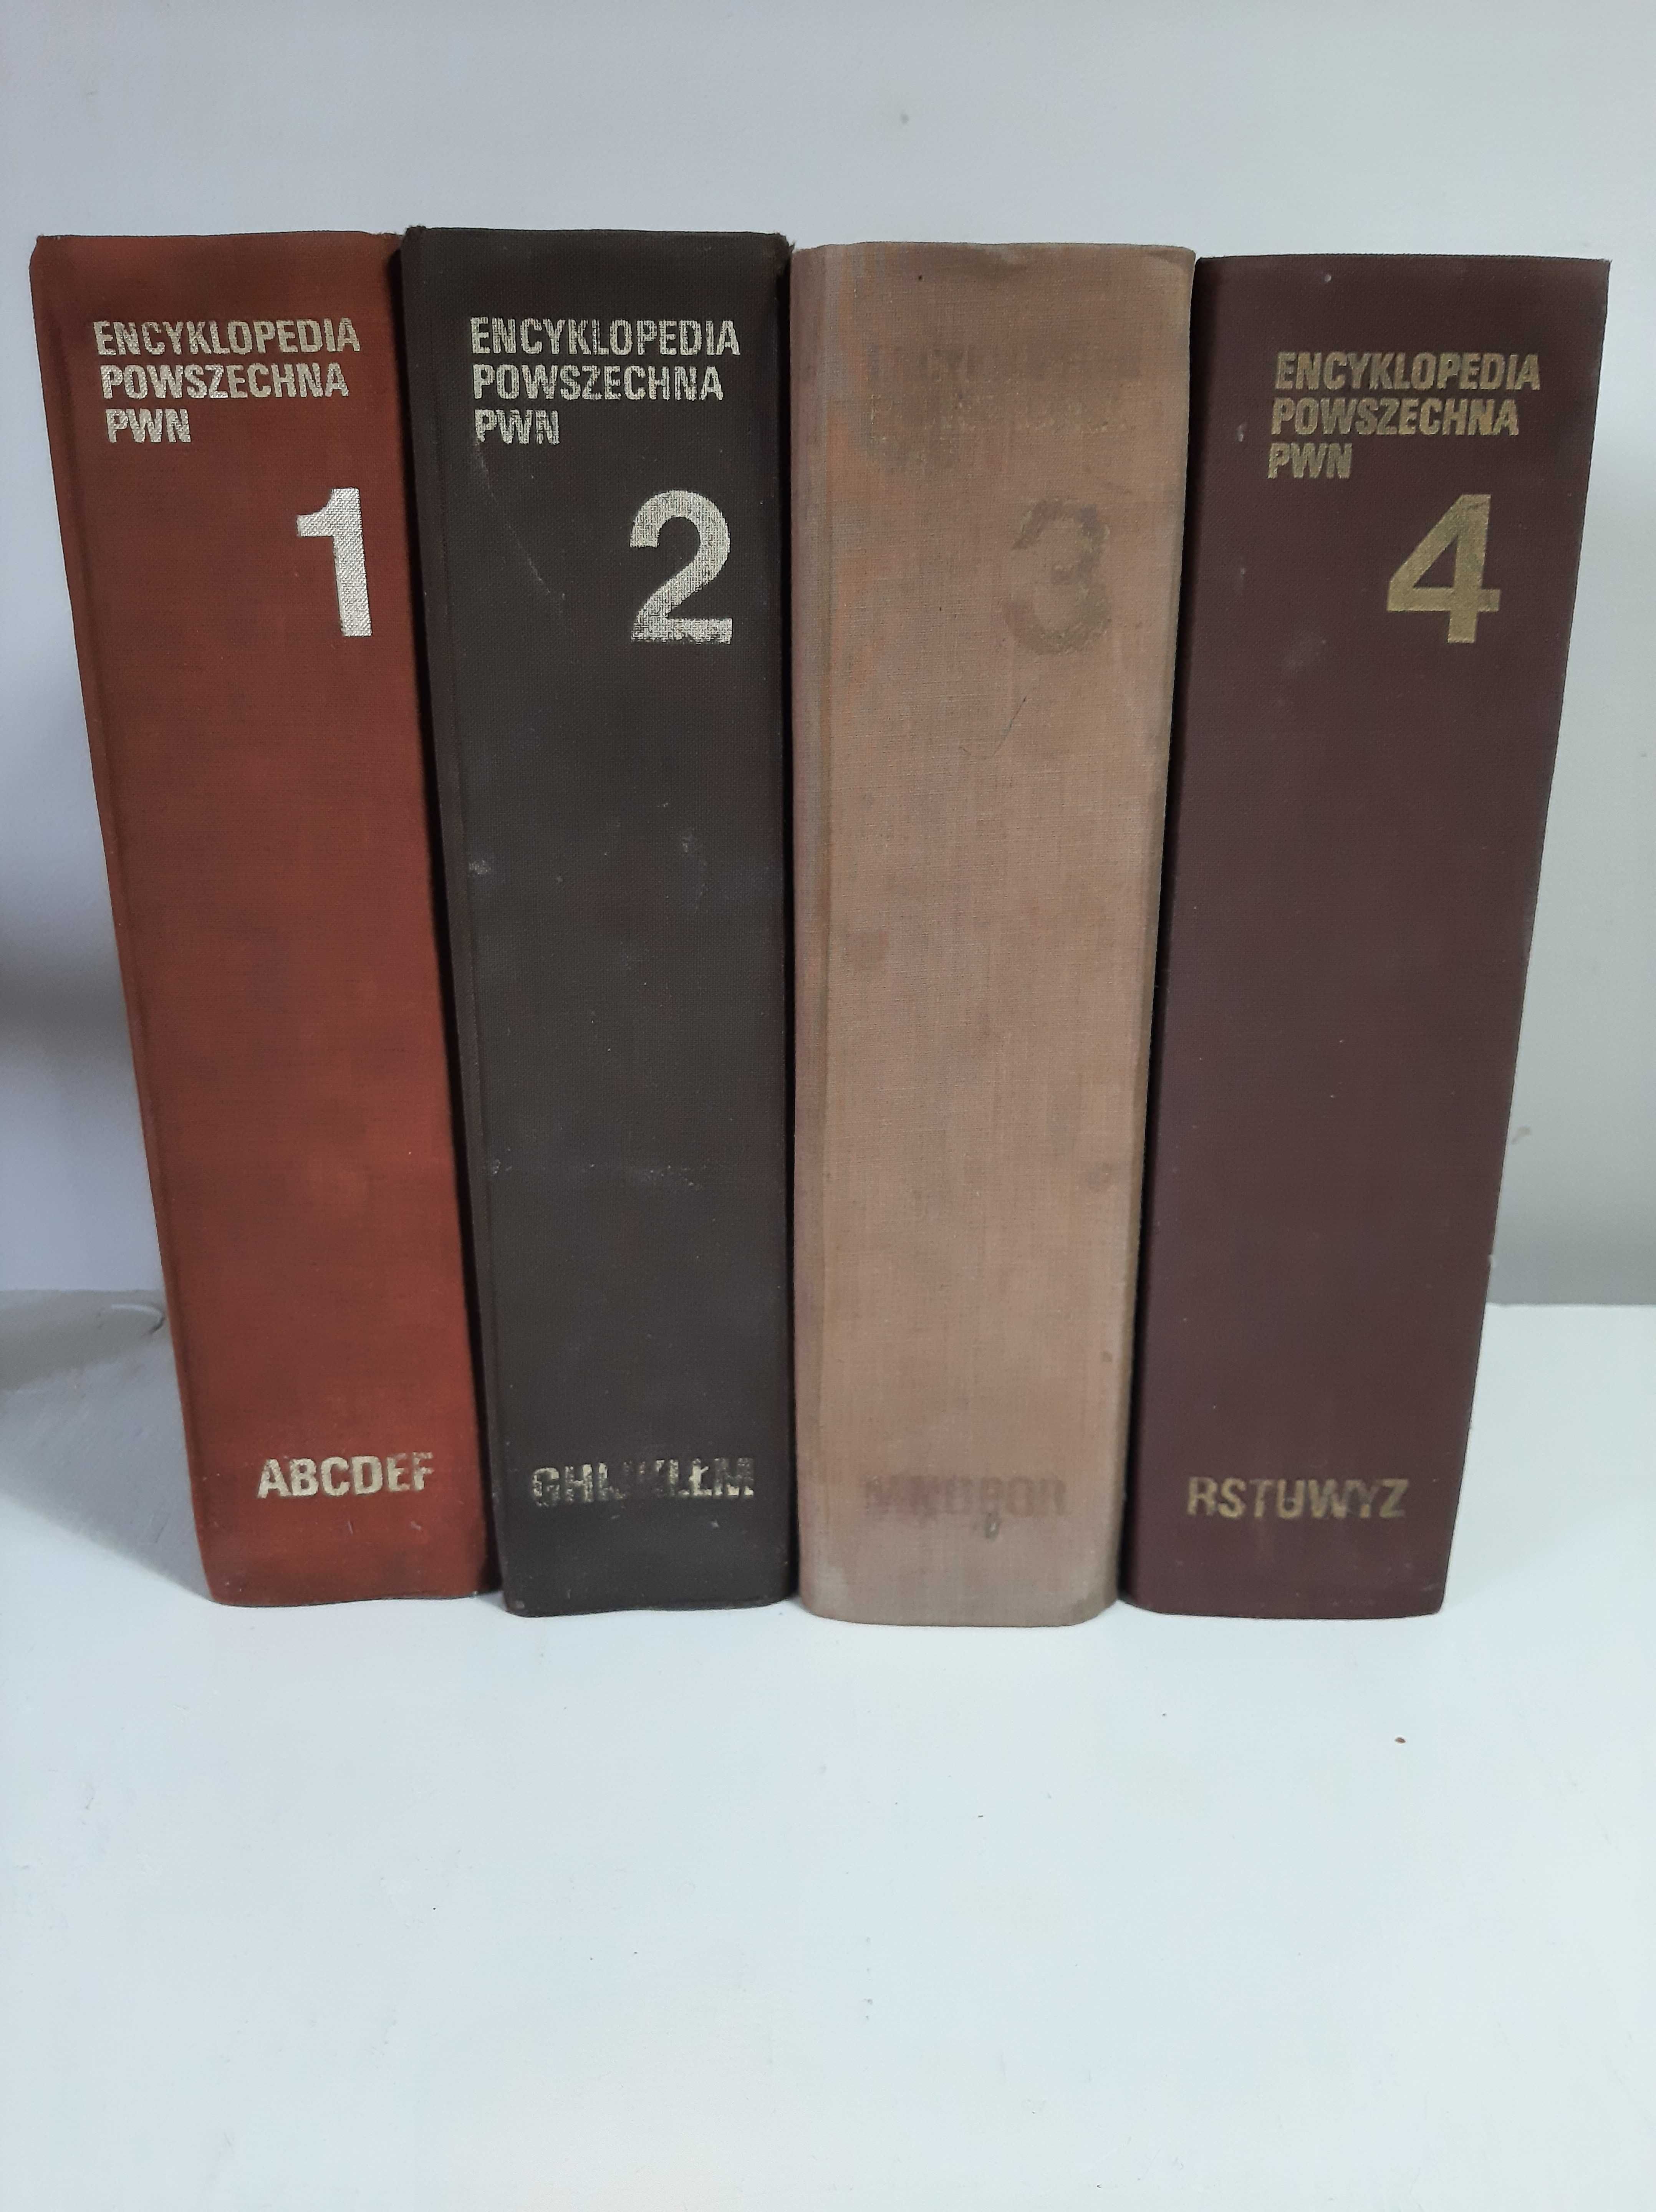 Encyklopedia Powszechna PWN tom 1-4 Wydanie trzecie 1983 r